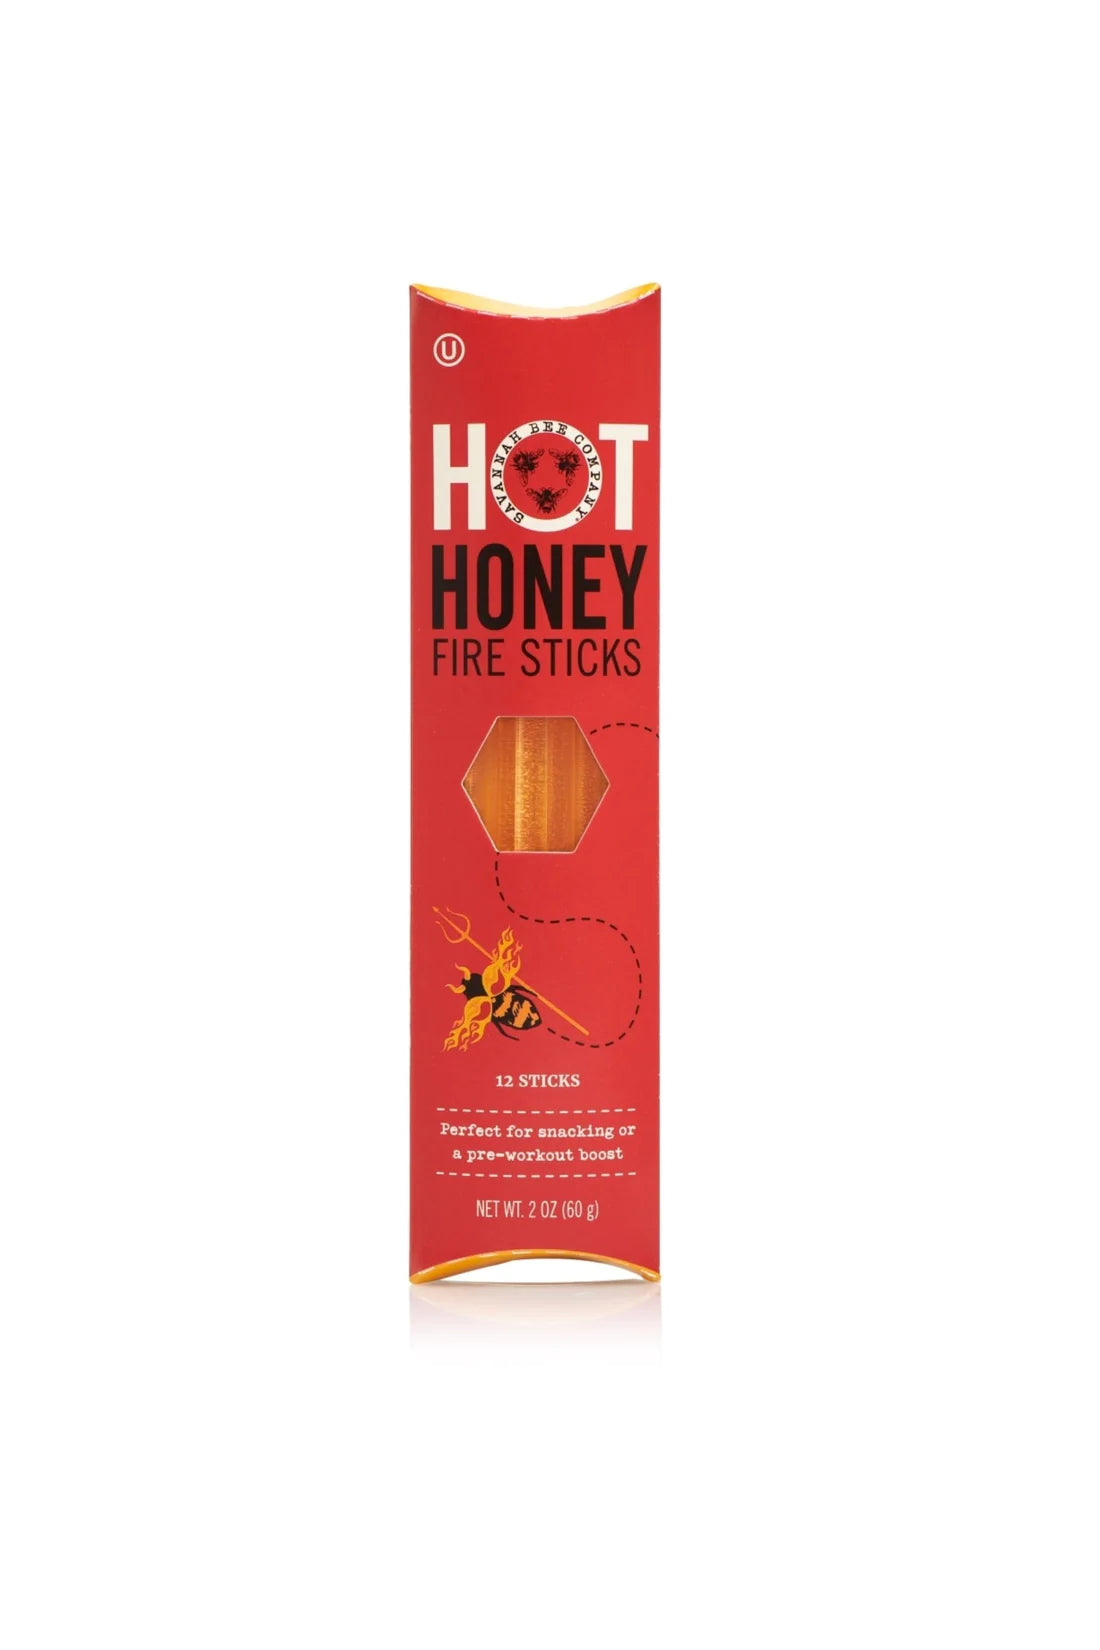 Savannah Bee Company Honey Sticks